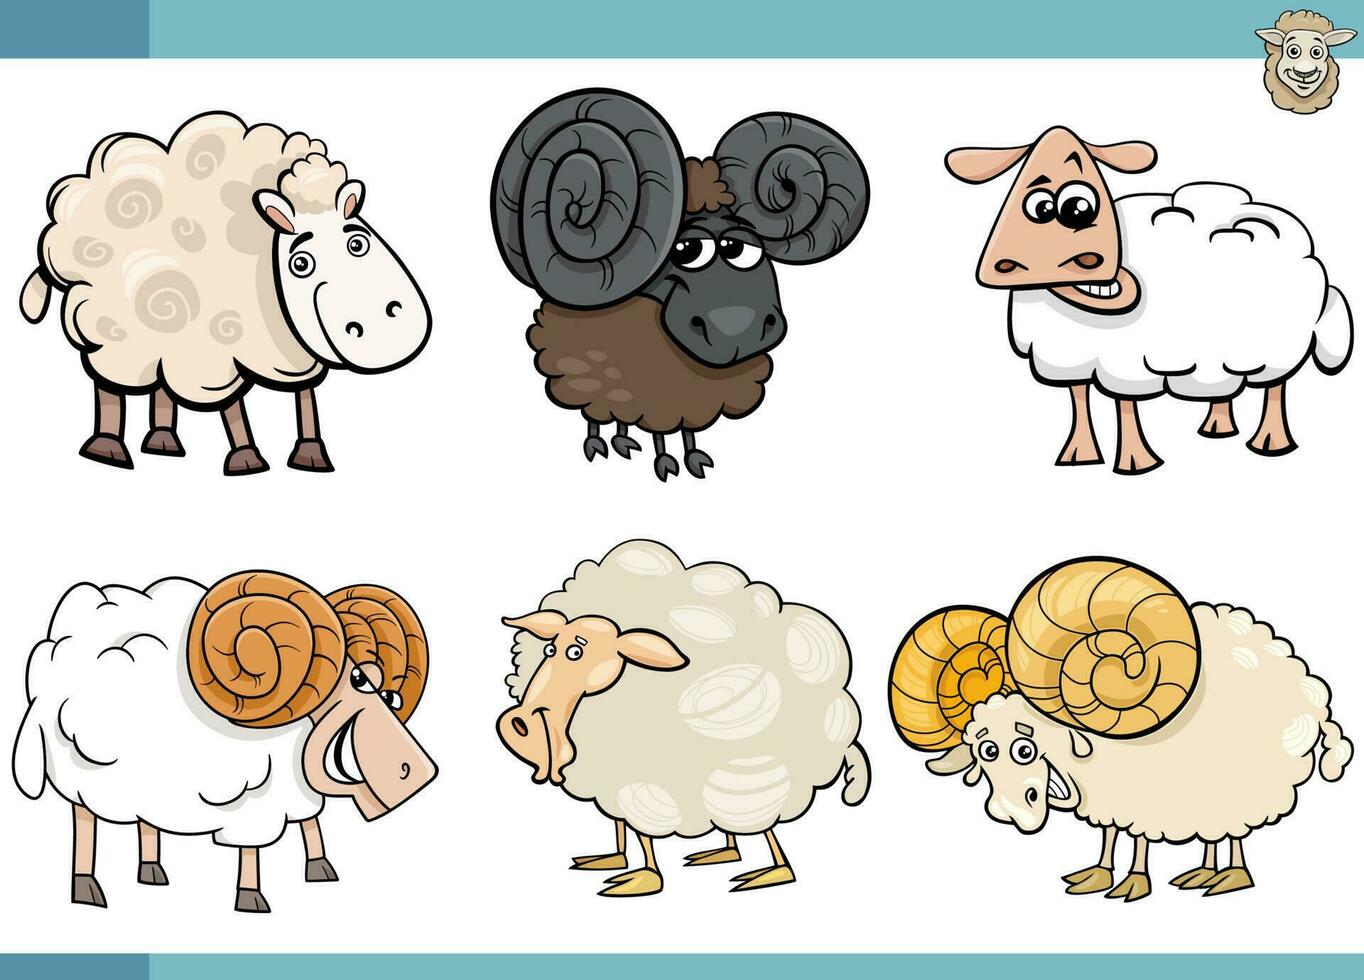 desenho animado ovelha Fazenda animais quadrinho personagens conjunto vetor